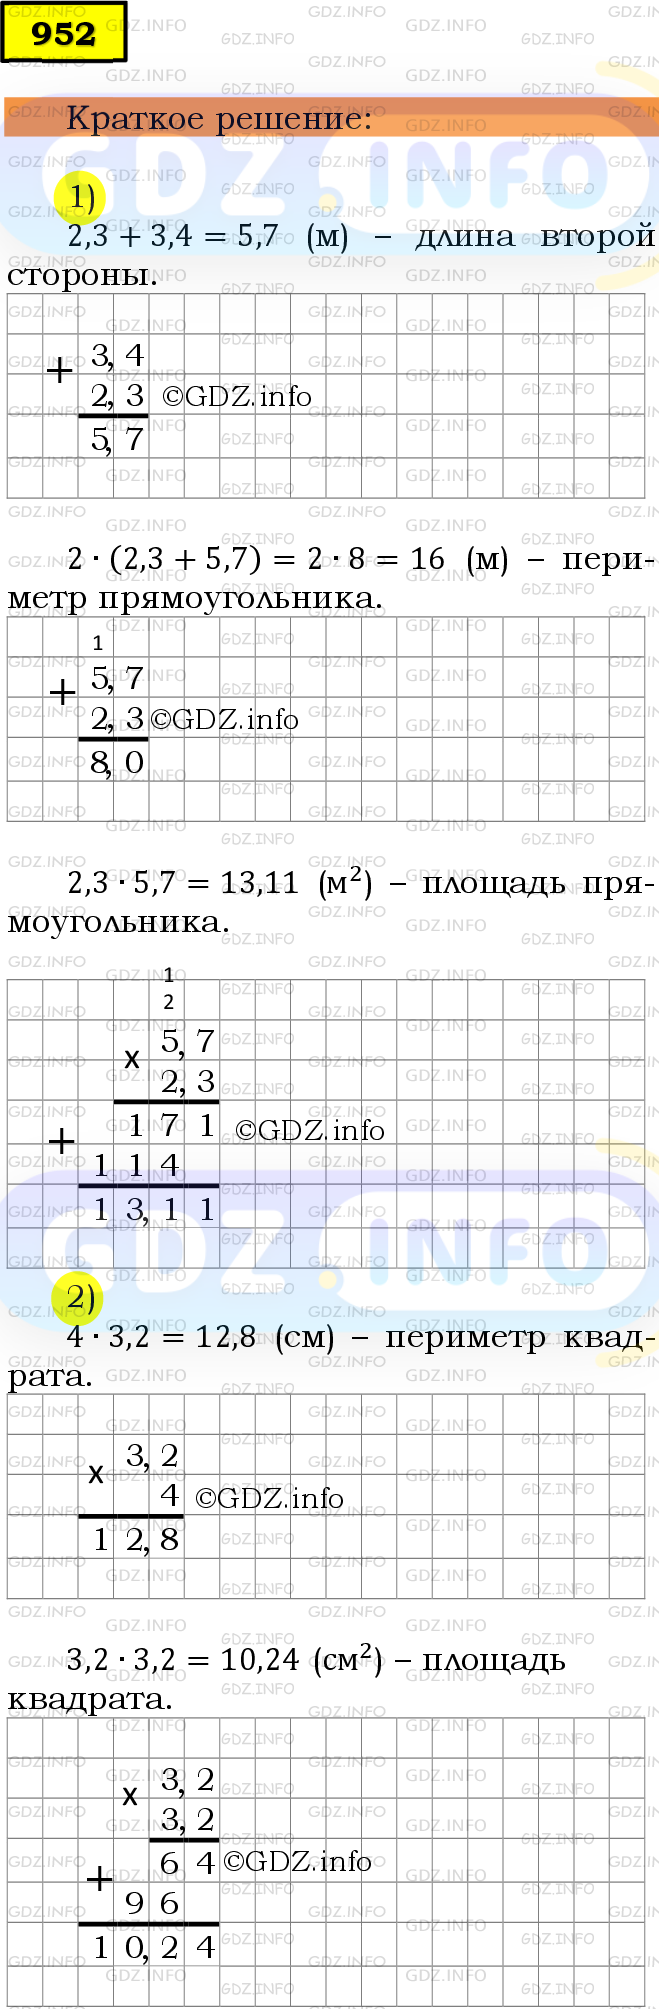 Фото решения 6: Номер №952 из ГДЗ по Математике 5 класс: Мерзляк А.Г. г.